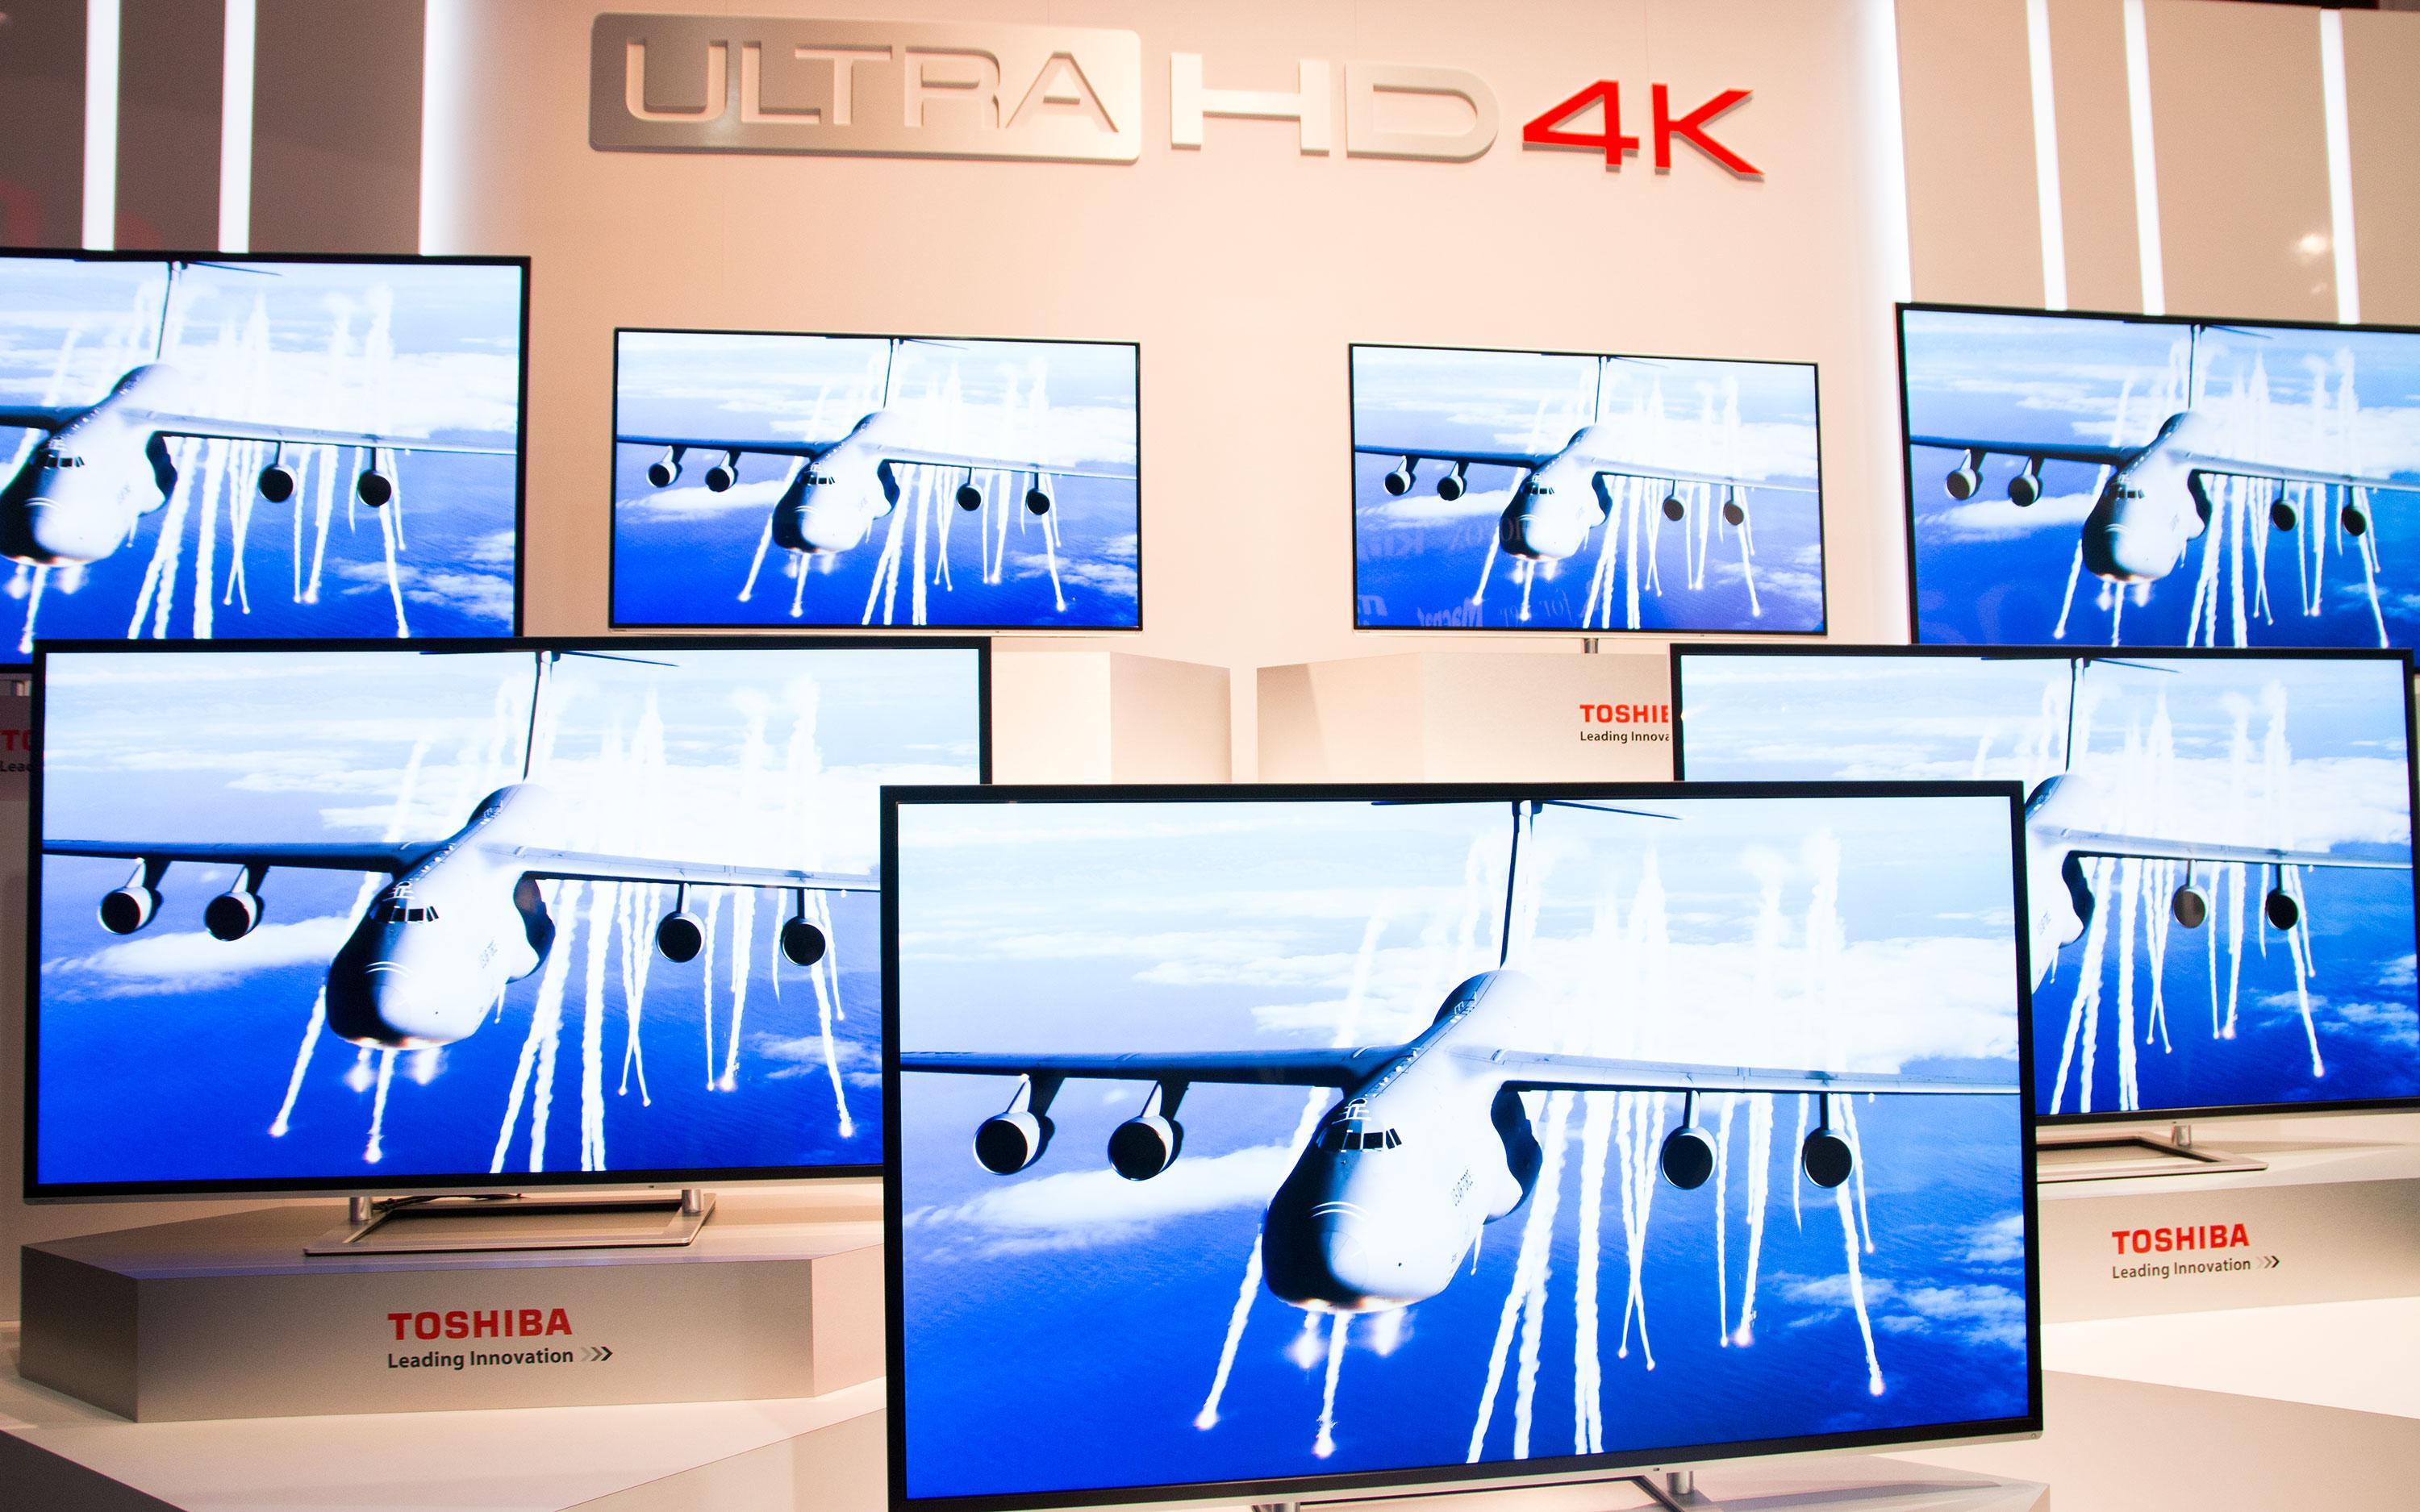 4K-TV-er dominerte på mesegulvet, her representert av Toshiba. .Foto: Jørgen Elton Nilsen, Hardware.no